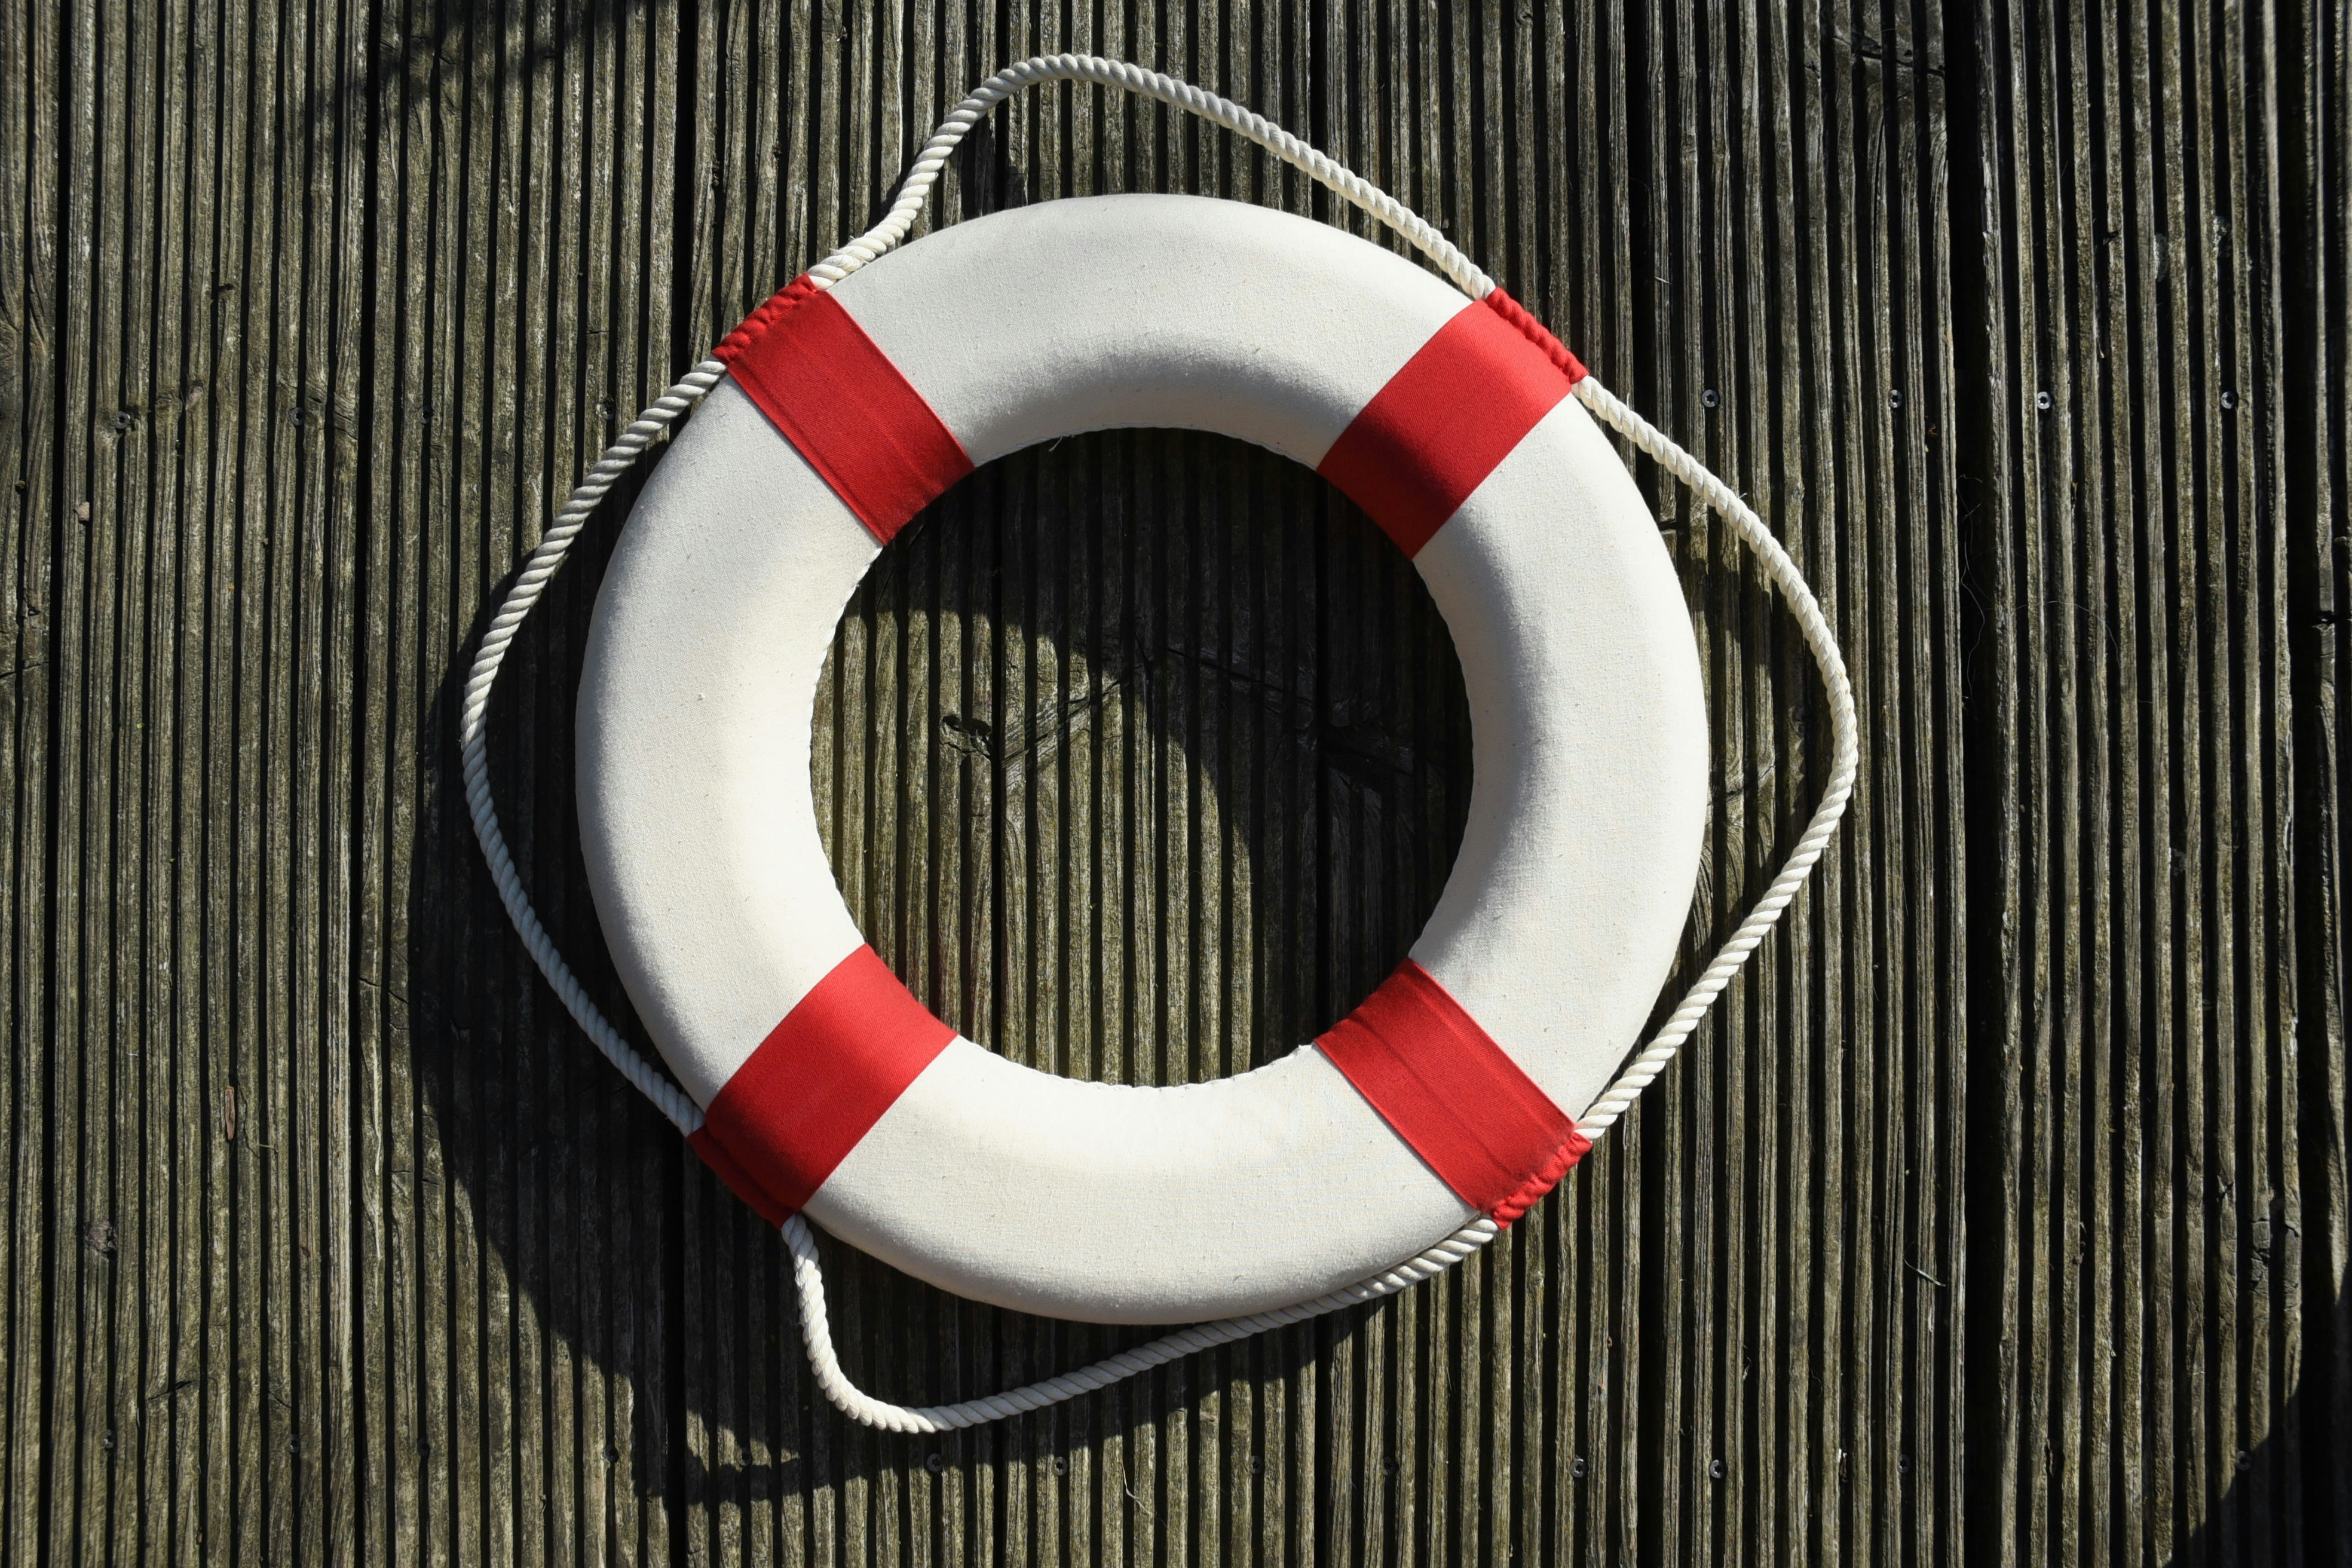 Life buoy ring